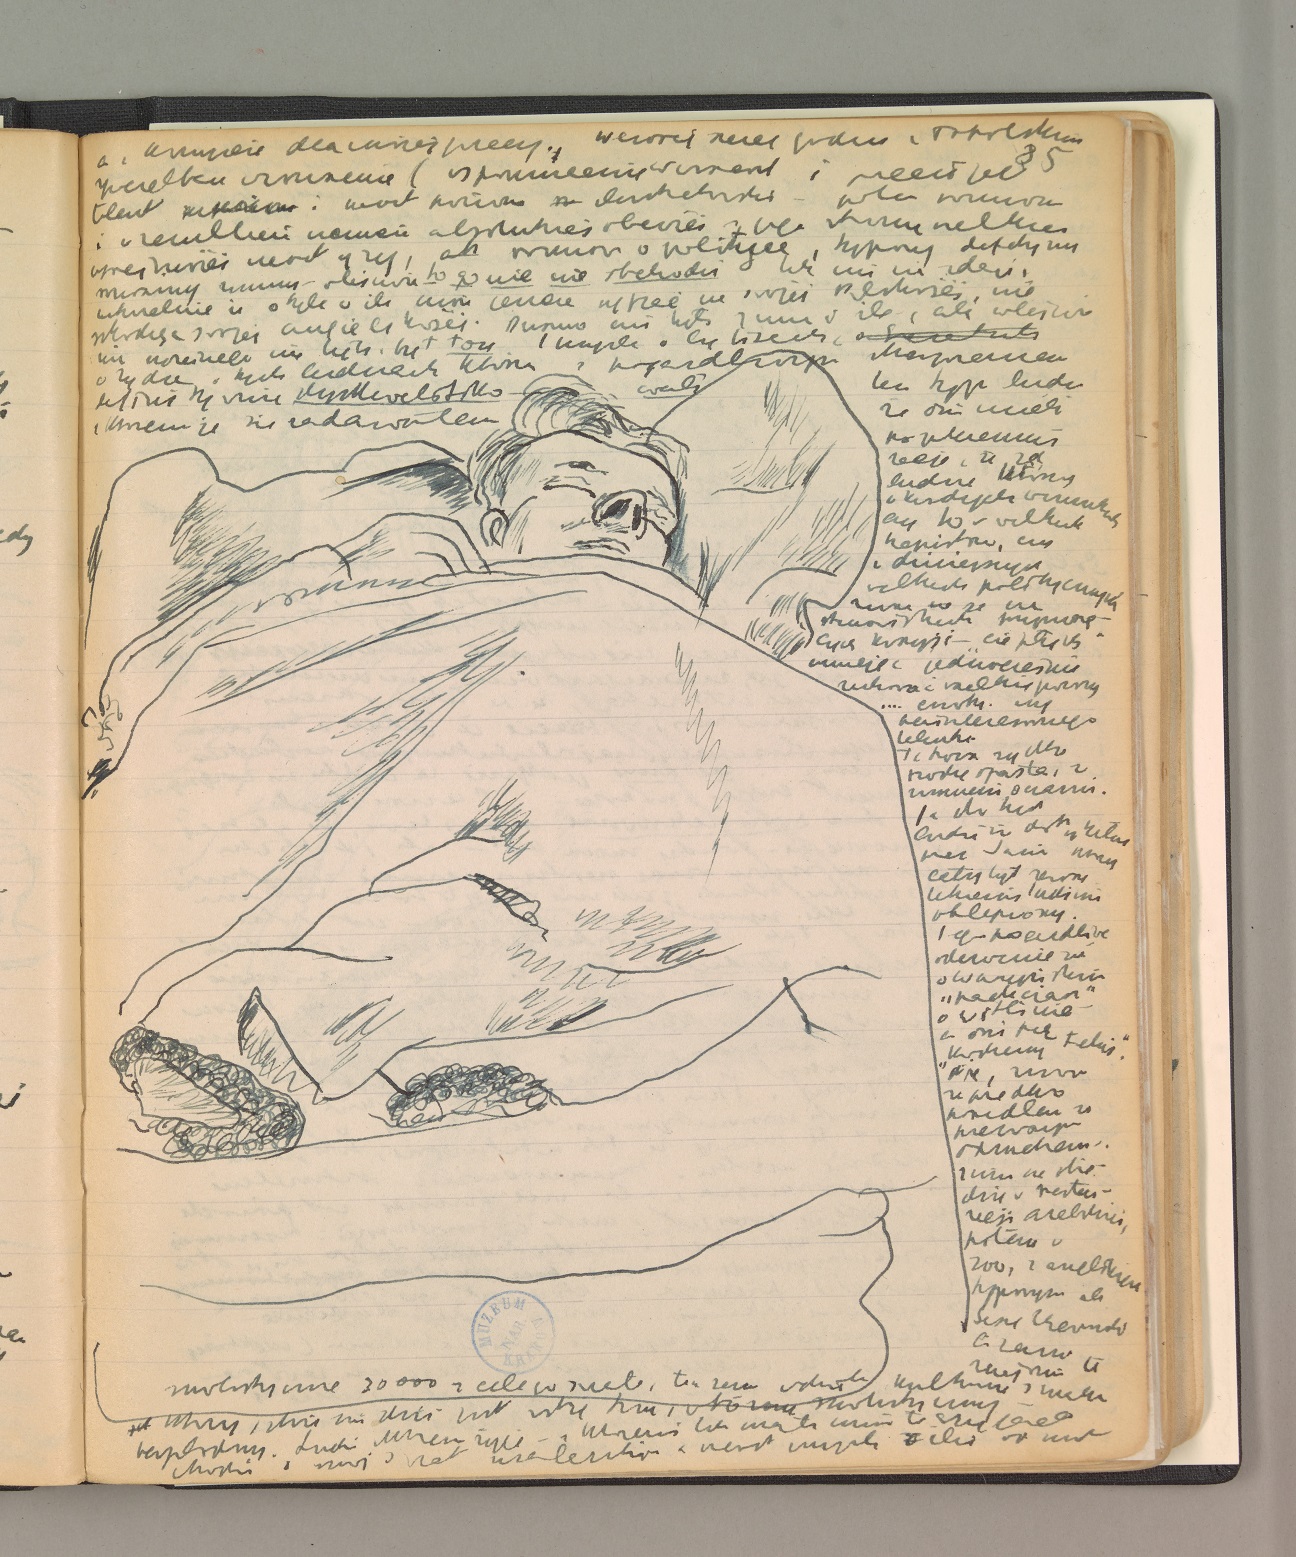 Zdjęcie strony dziennika Józefa Czapskiego - rysunek ołówkiem przedstawiający śpiącego pod kocem mężczyznę na pryczy..